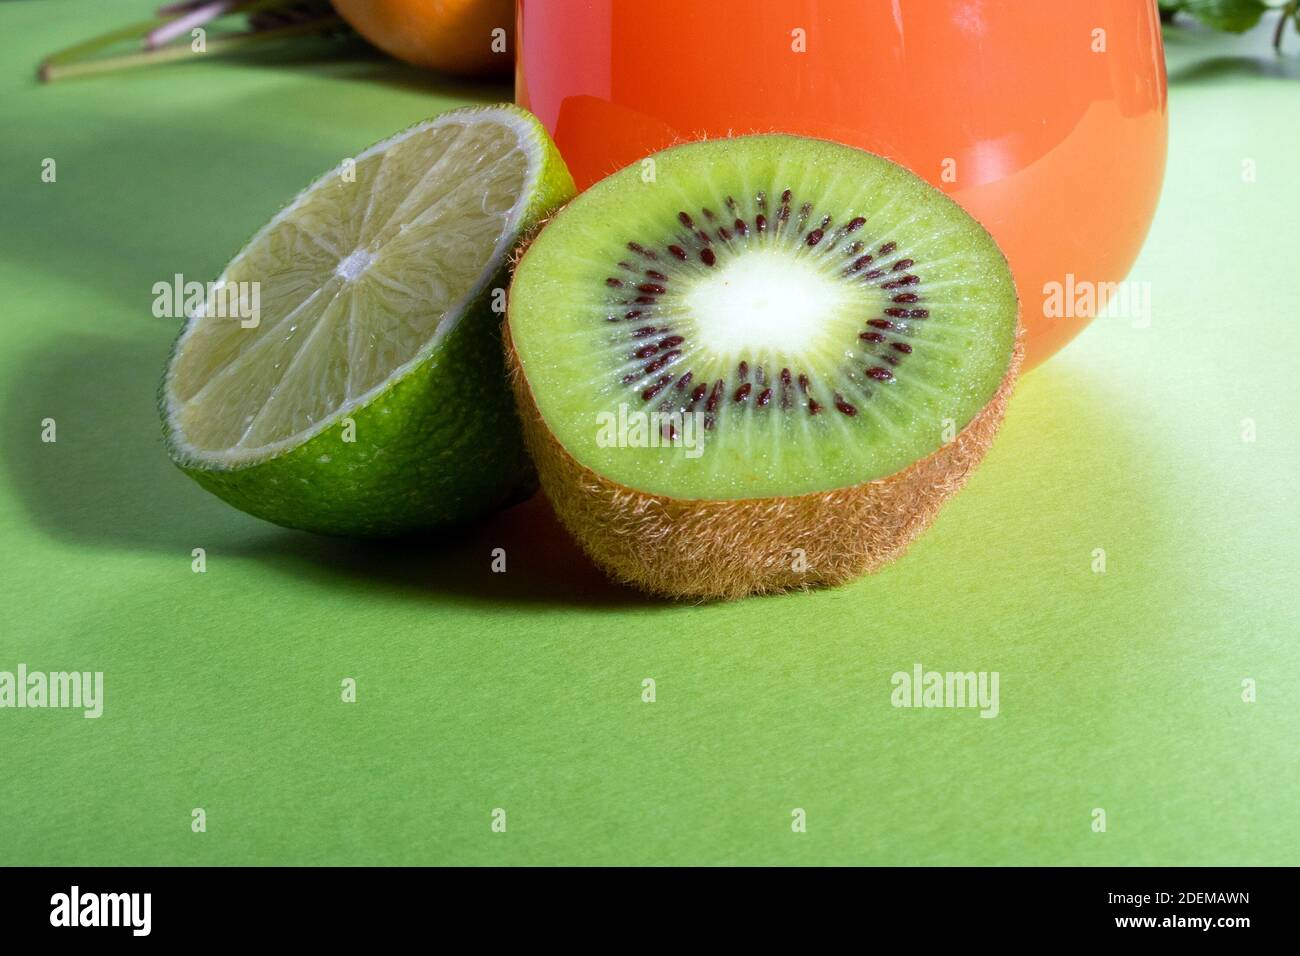 Komposition aus Gläsern mit Orangensaft, Limette, Kiwi und Grün auf hellgrünem Hintergrund Stockfoto